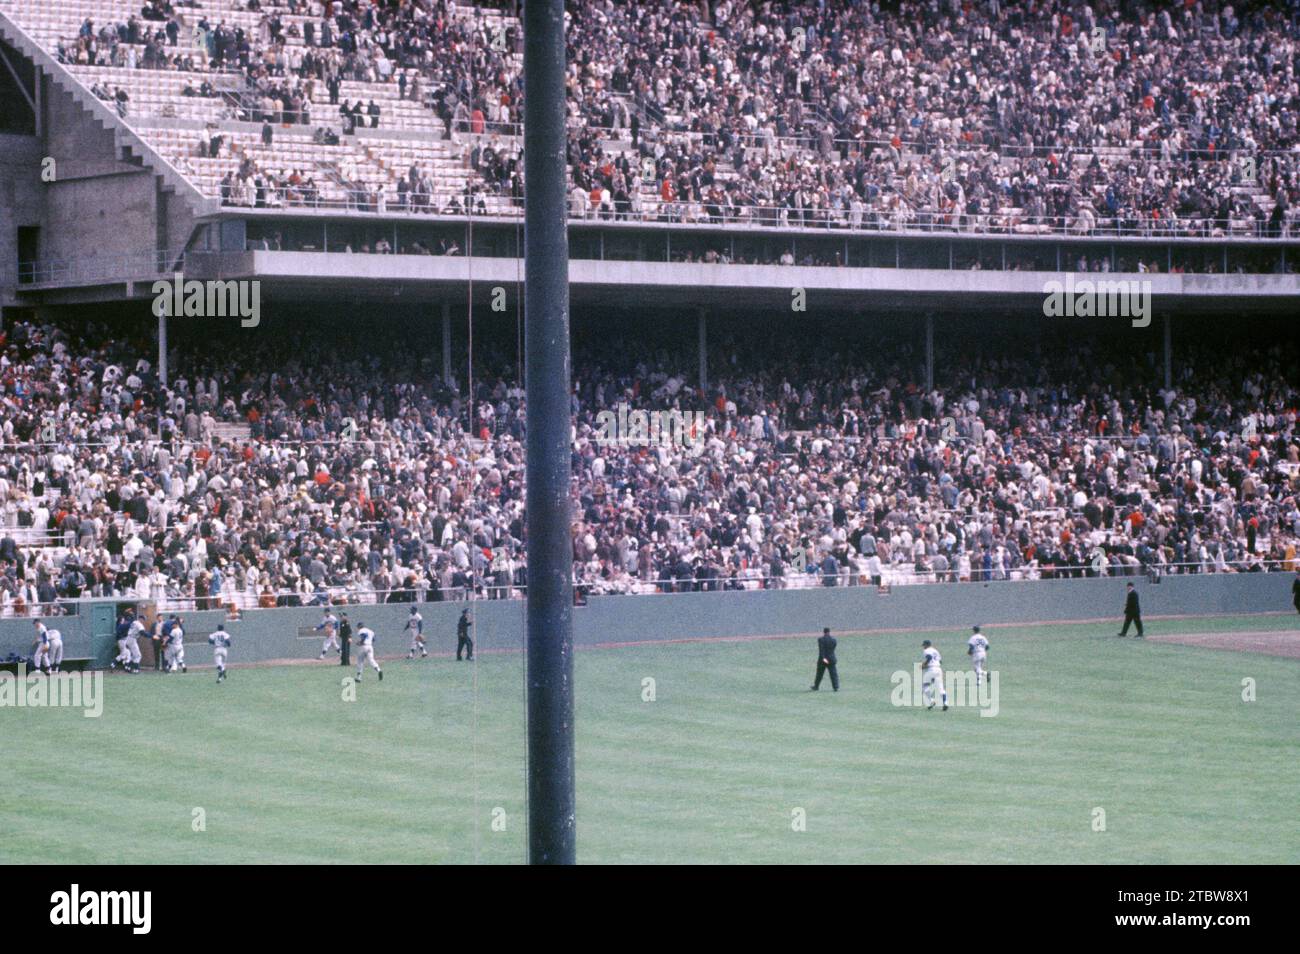 SAN FRANCISCO, CA - 20 MAI : les Dodgers de Los Angeles quittent le terrain après avoir battu les Giants de San Francisco lors d'un match de MLB le 20 mai 1961 au Candlestick Park à San Francisco, en Californie. (Photo de Hy Peskin) Banque D'Images